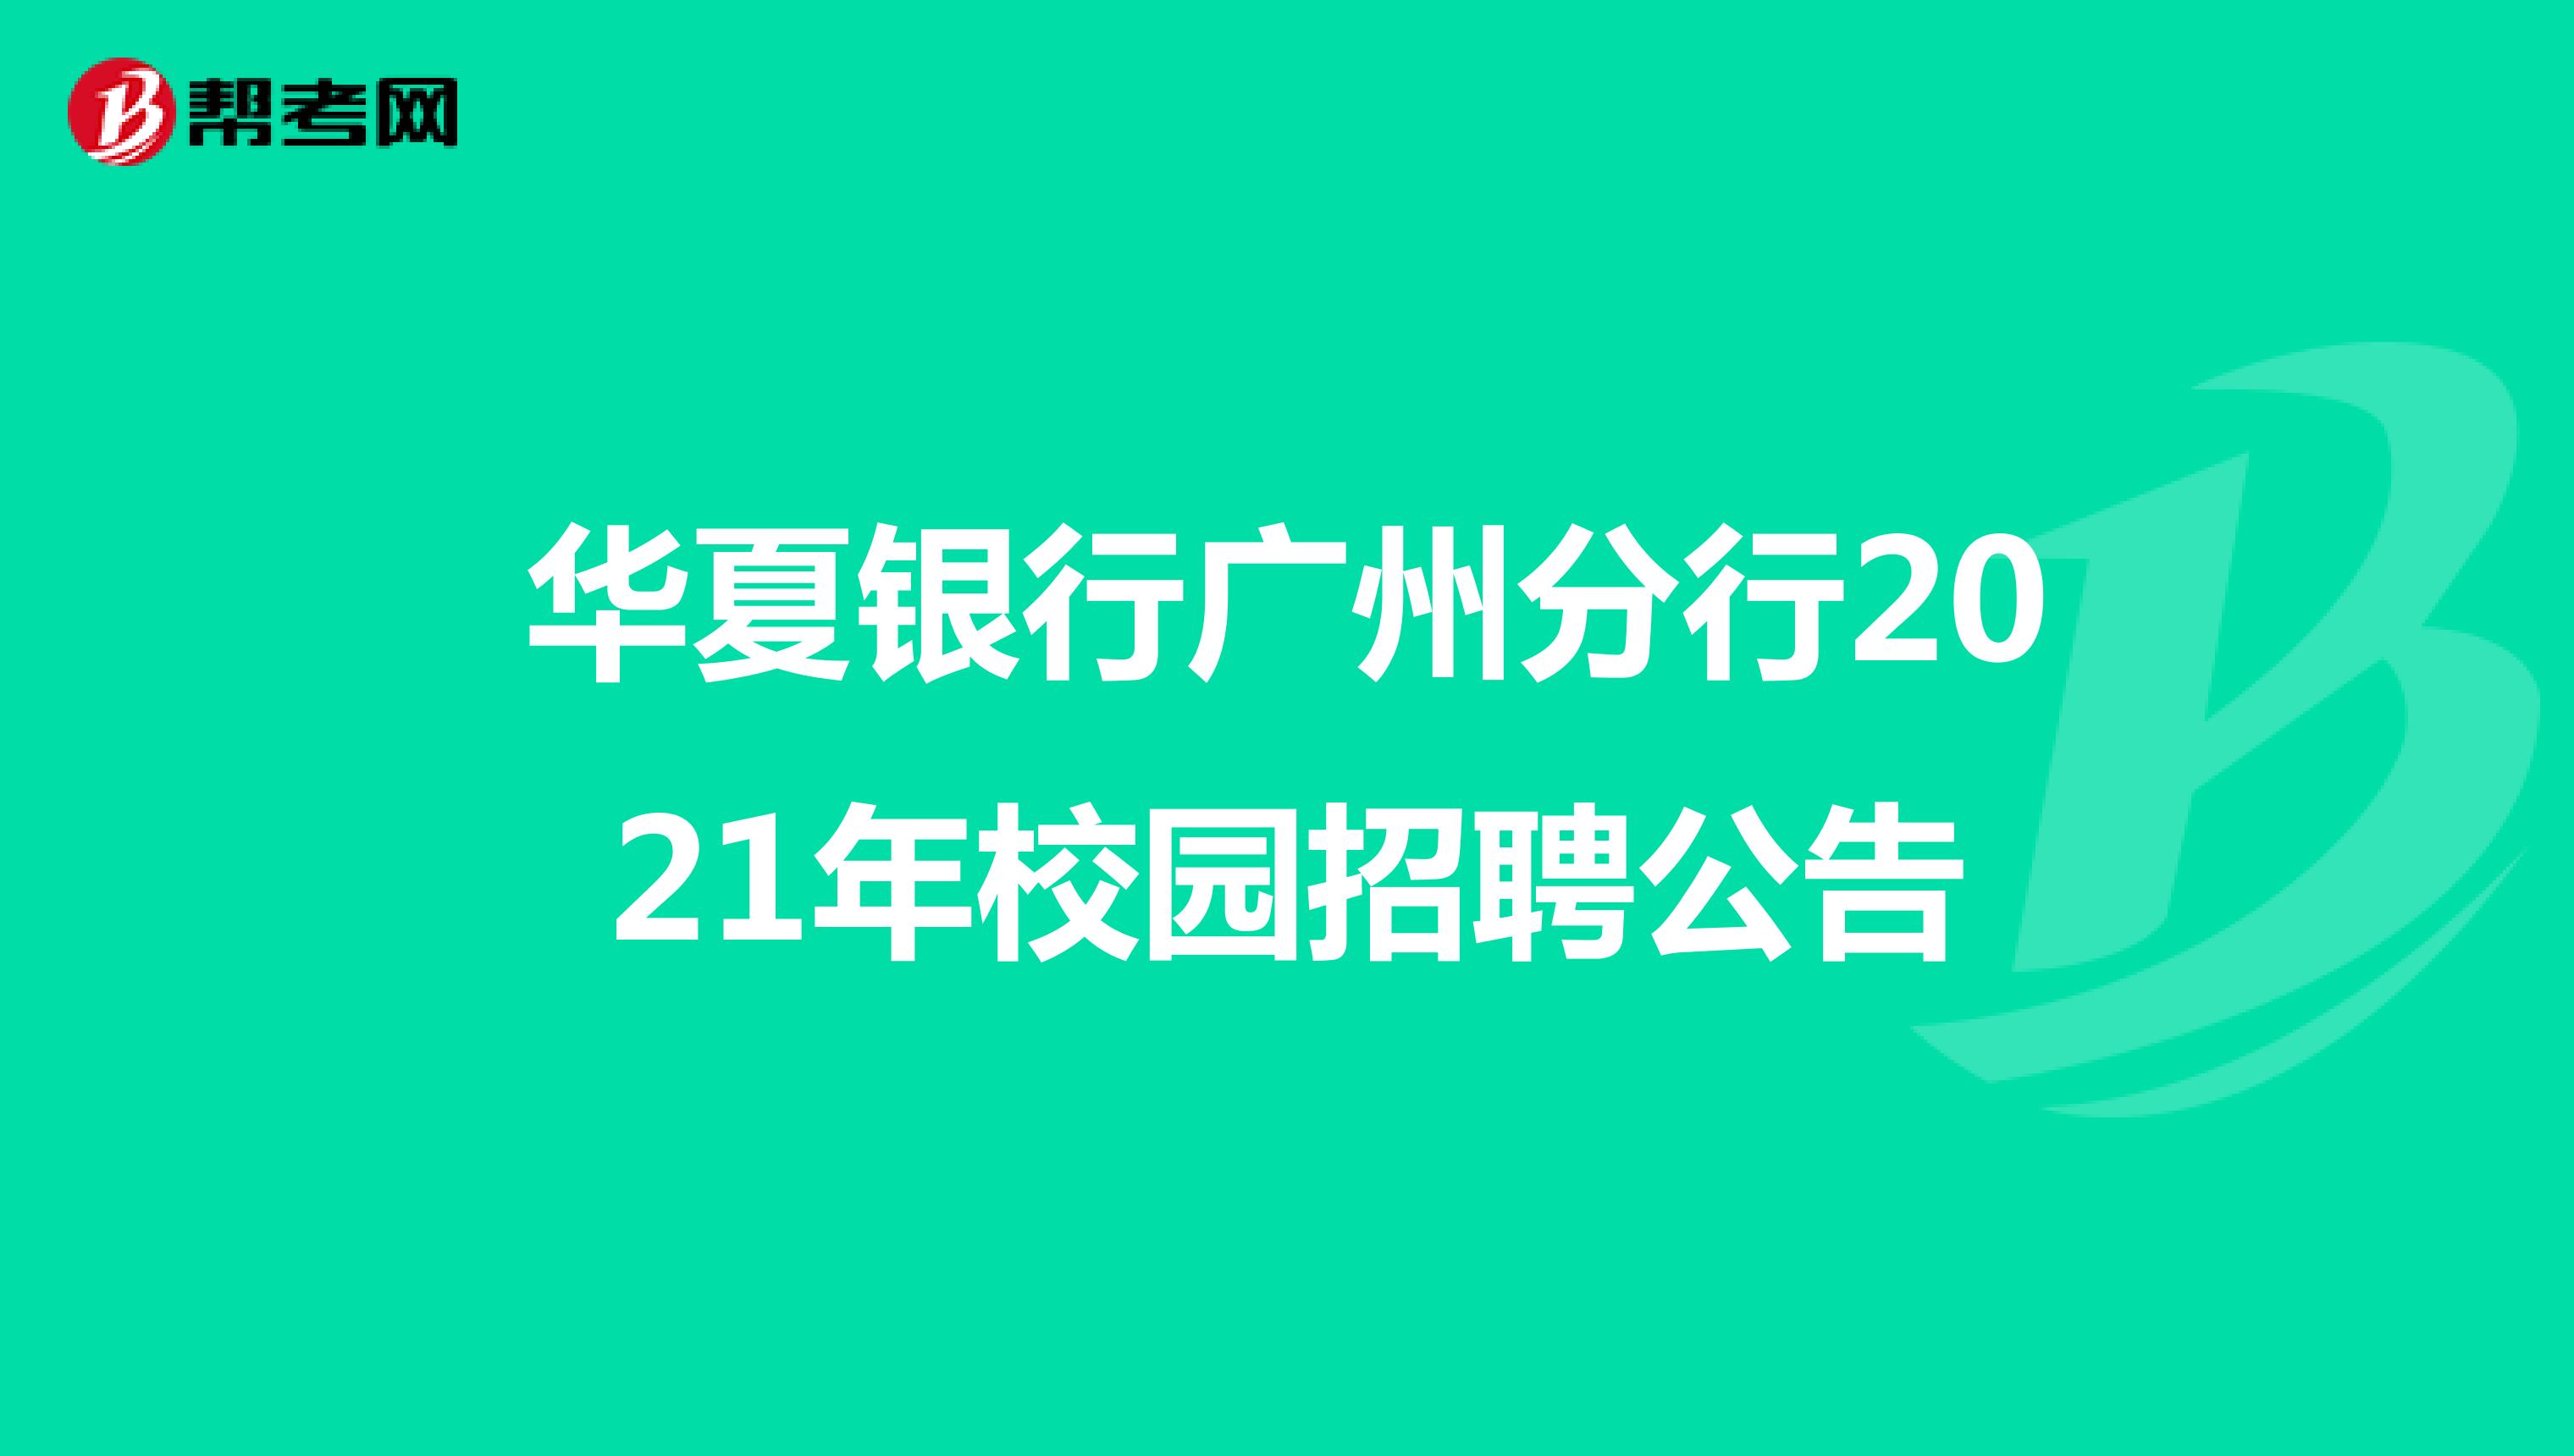 华夏银行广州分行2021年校园招聘公告